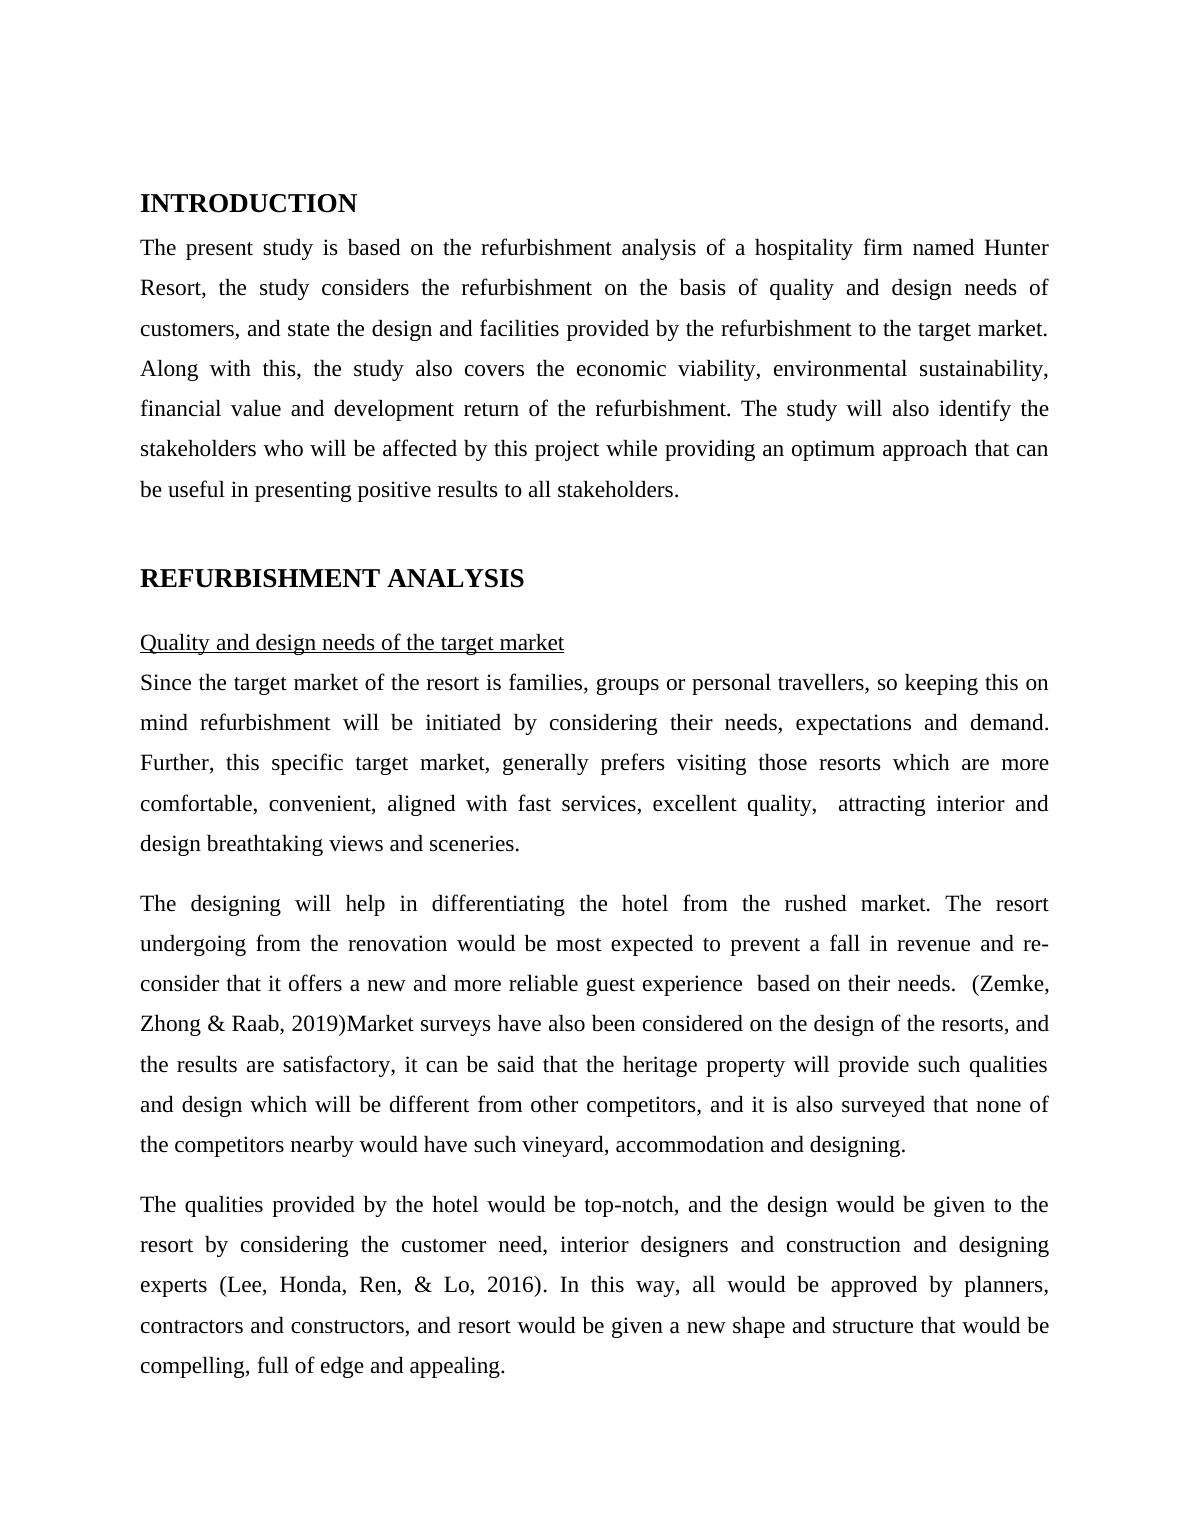 Refurbishment Analysis of Hunter Resort_3